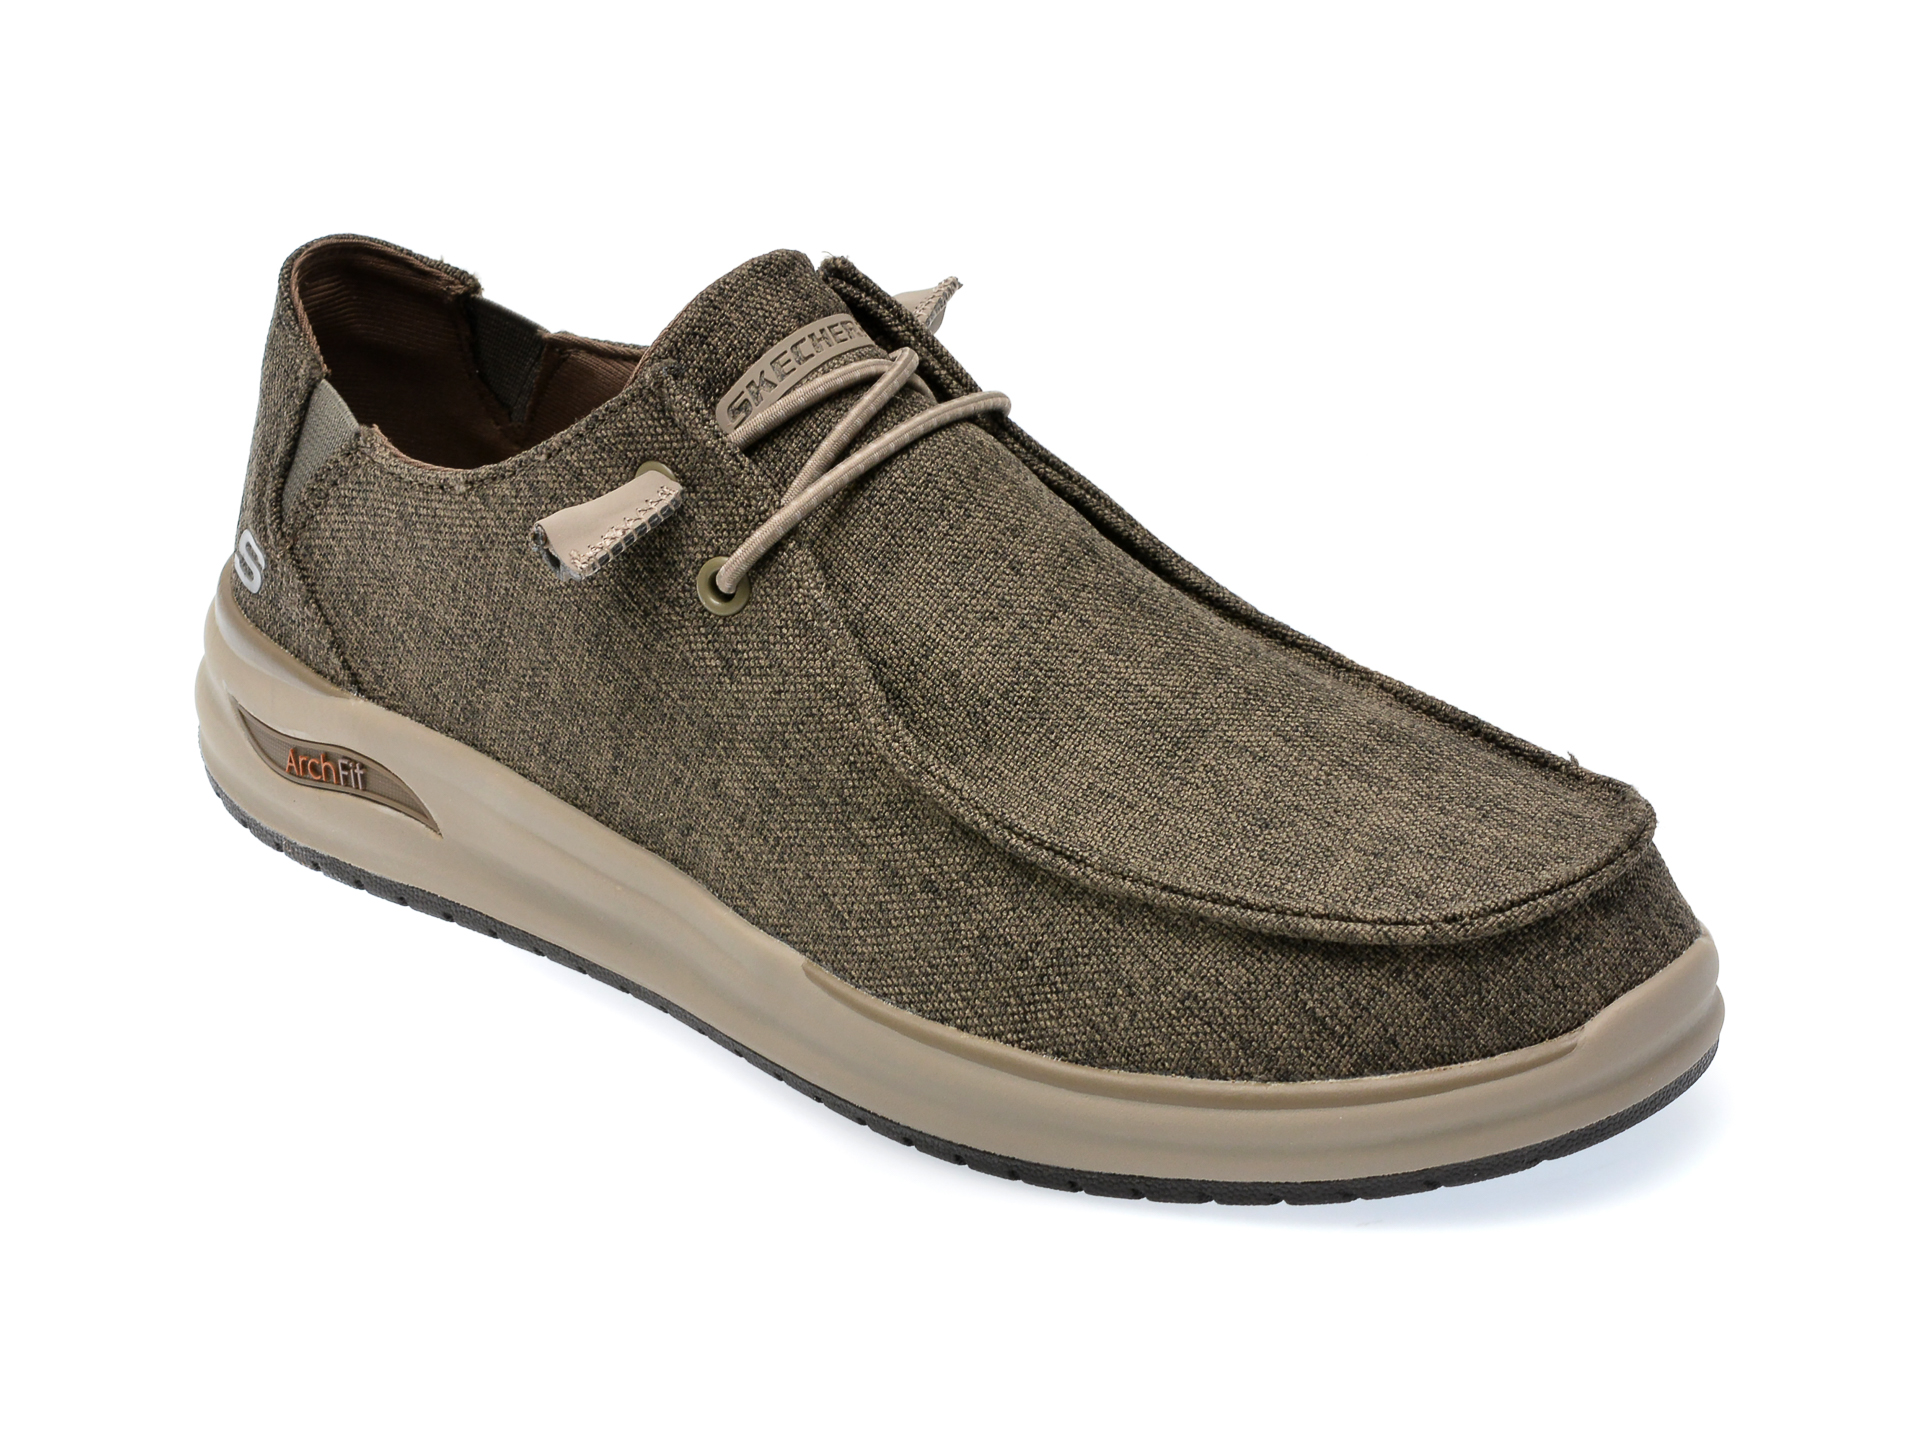 Poze Pantofi SKECHERS gri, ARCH FIT, din material textil tezyo.ro